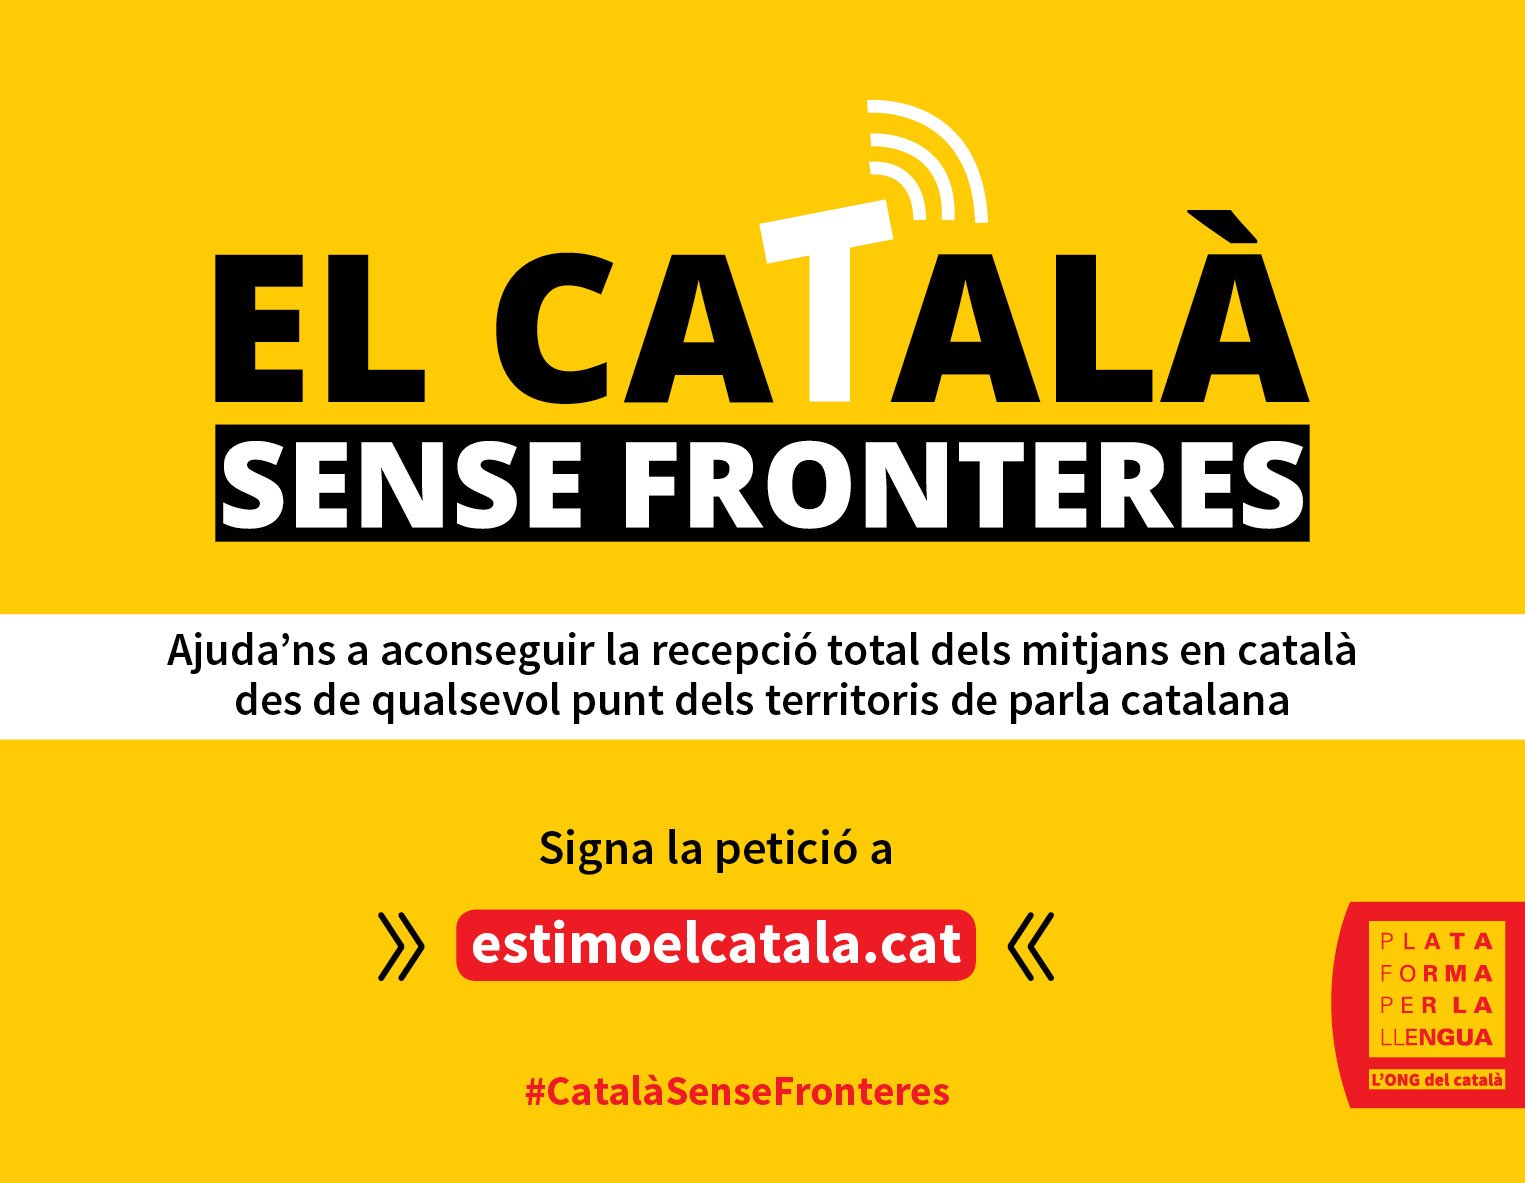 Más normas lingüísticas discriminatorias para el catalán